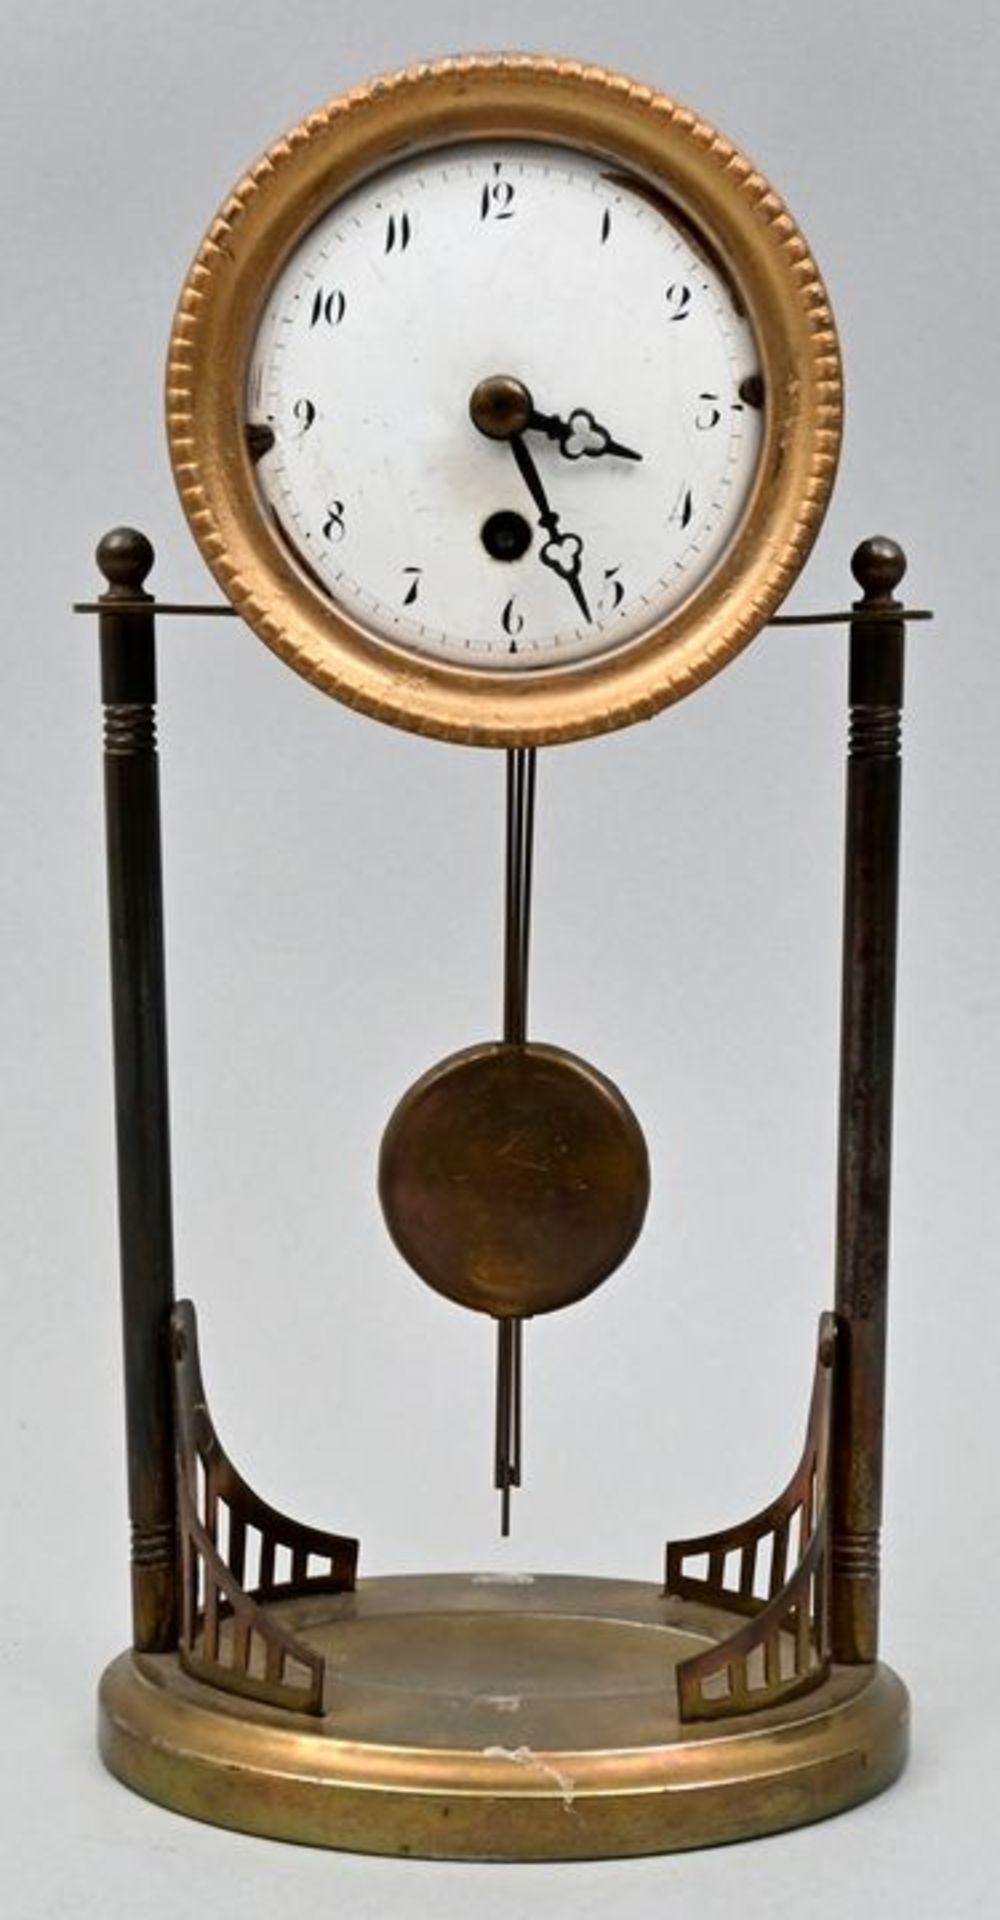 Tischuhr / Table clock